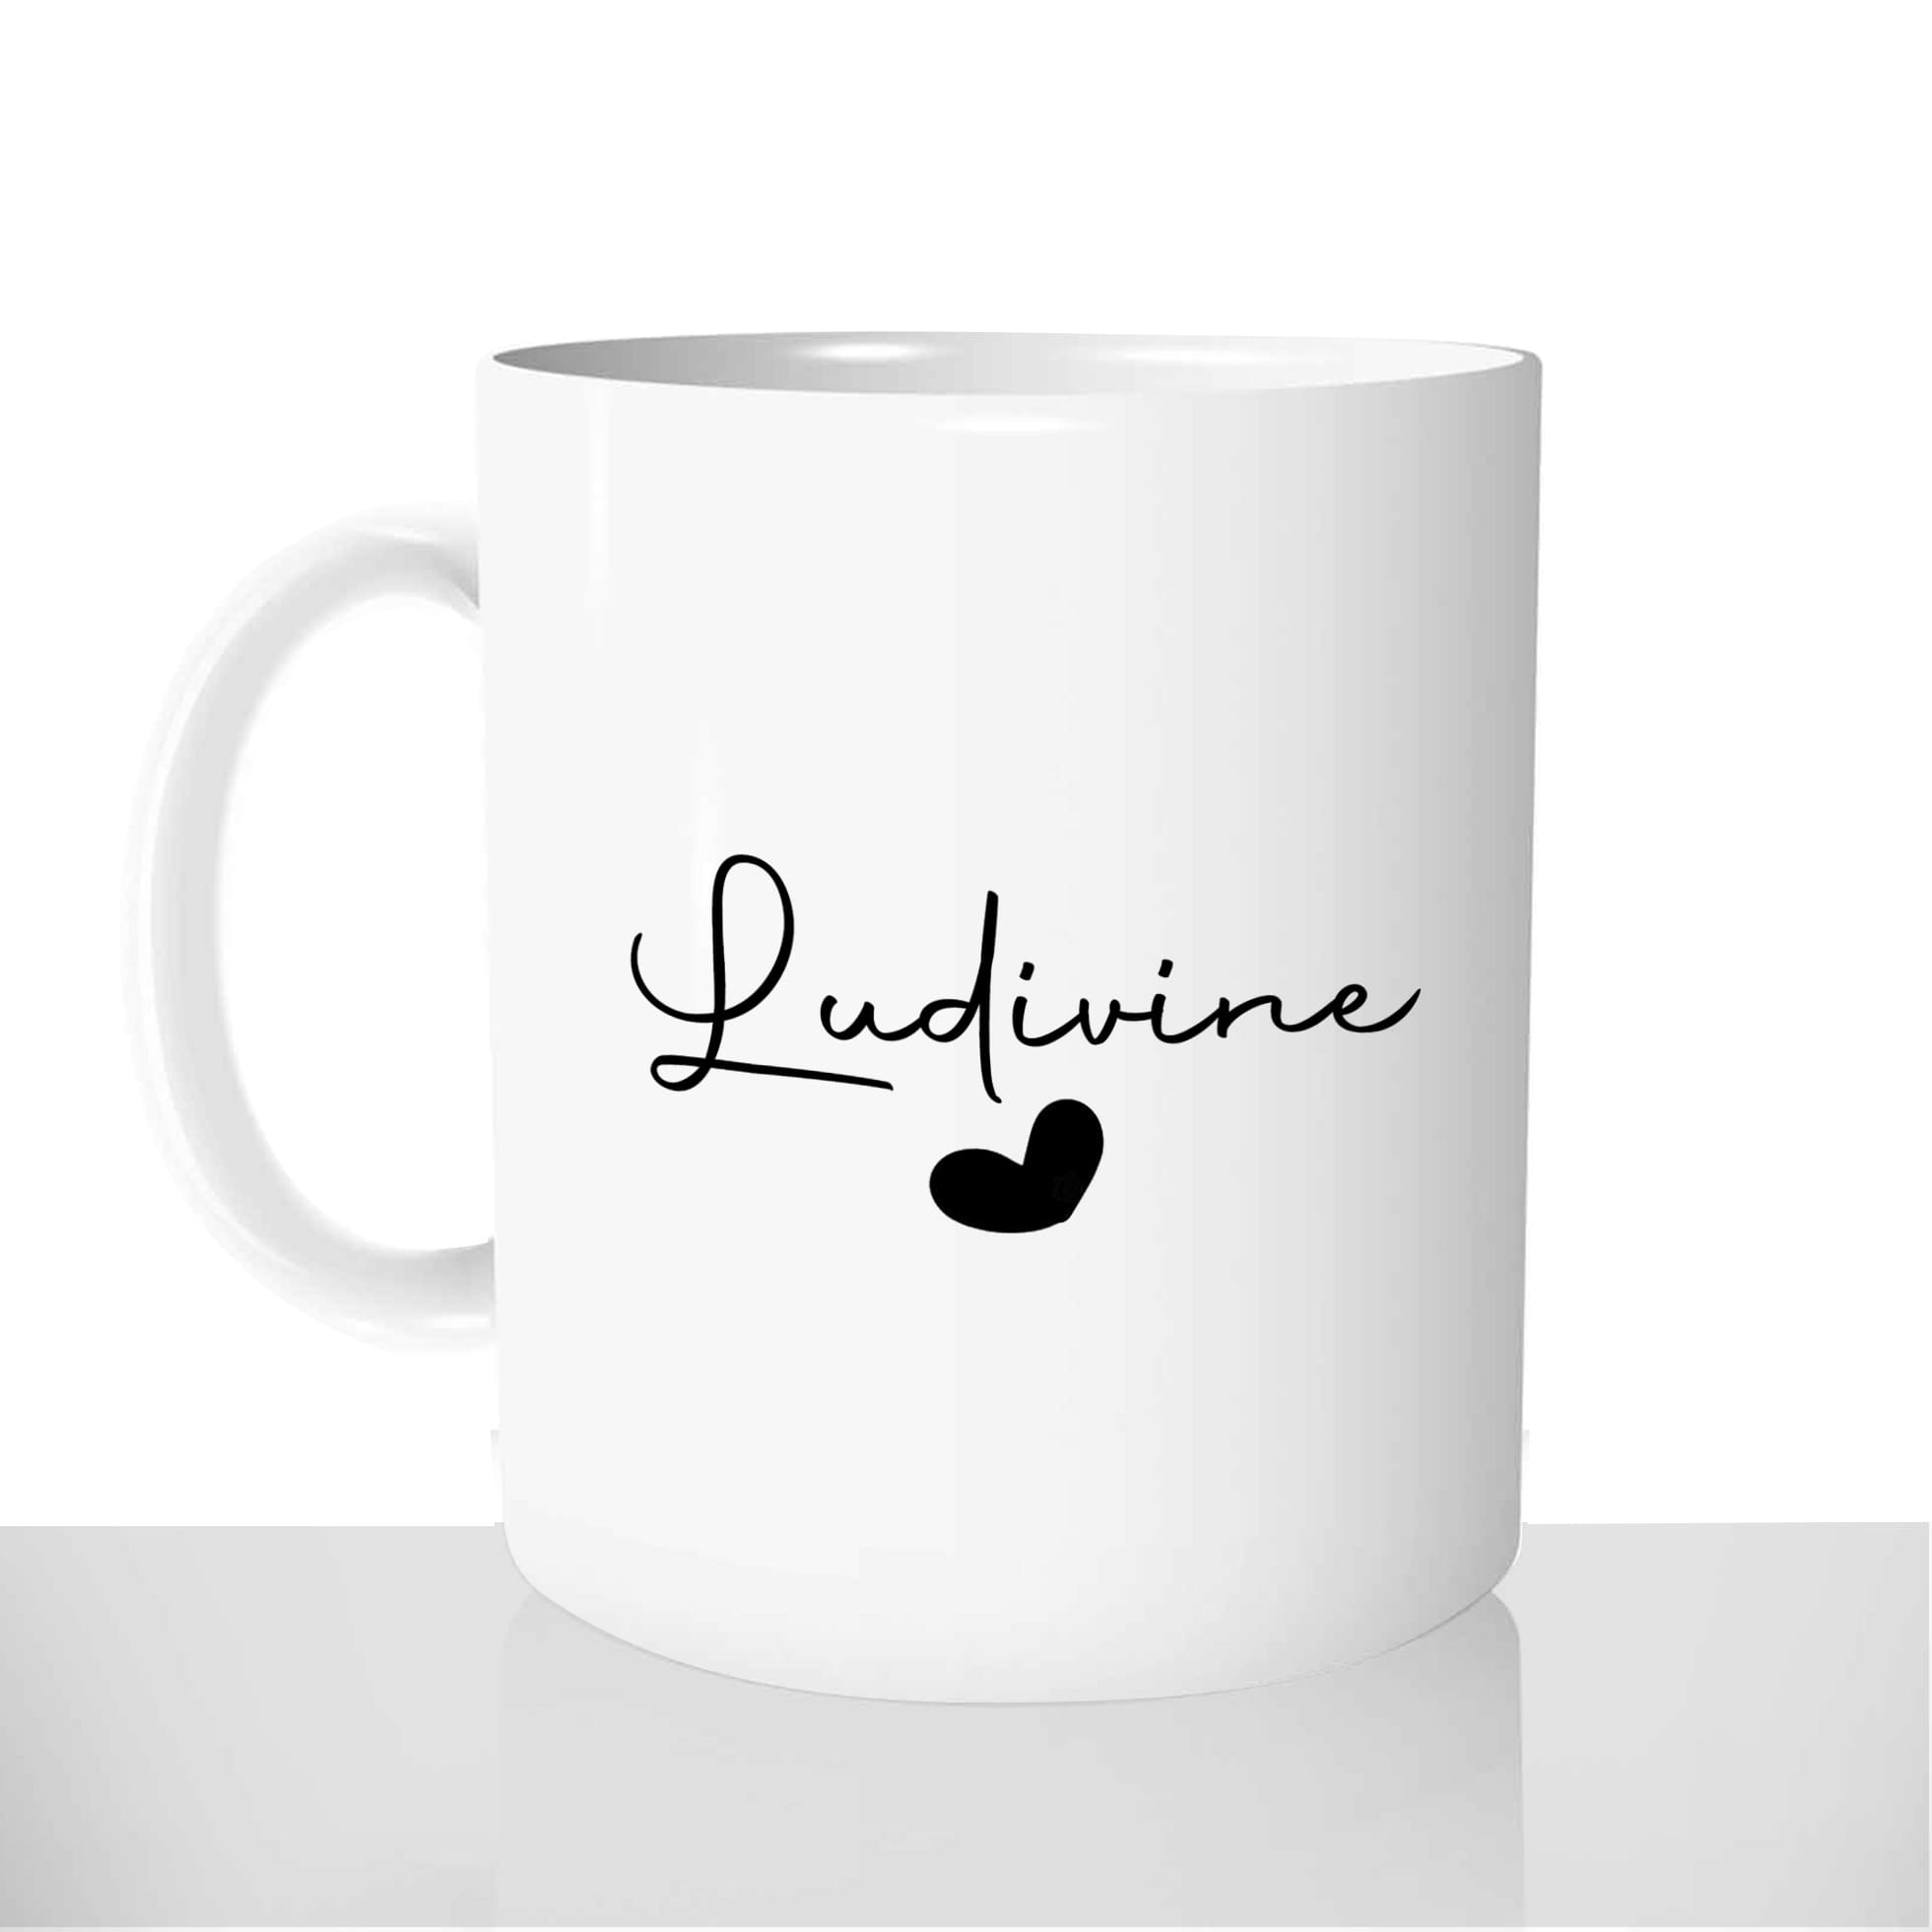 mug-blanc-céramique-personnalisable-tasse-11oz-saint-valentin-coeurs-prenom-personnalisé-femme-mignon-fun-idée-cadeau-original